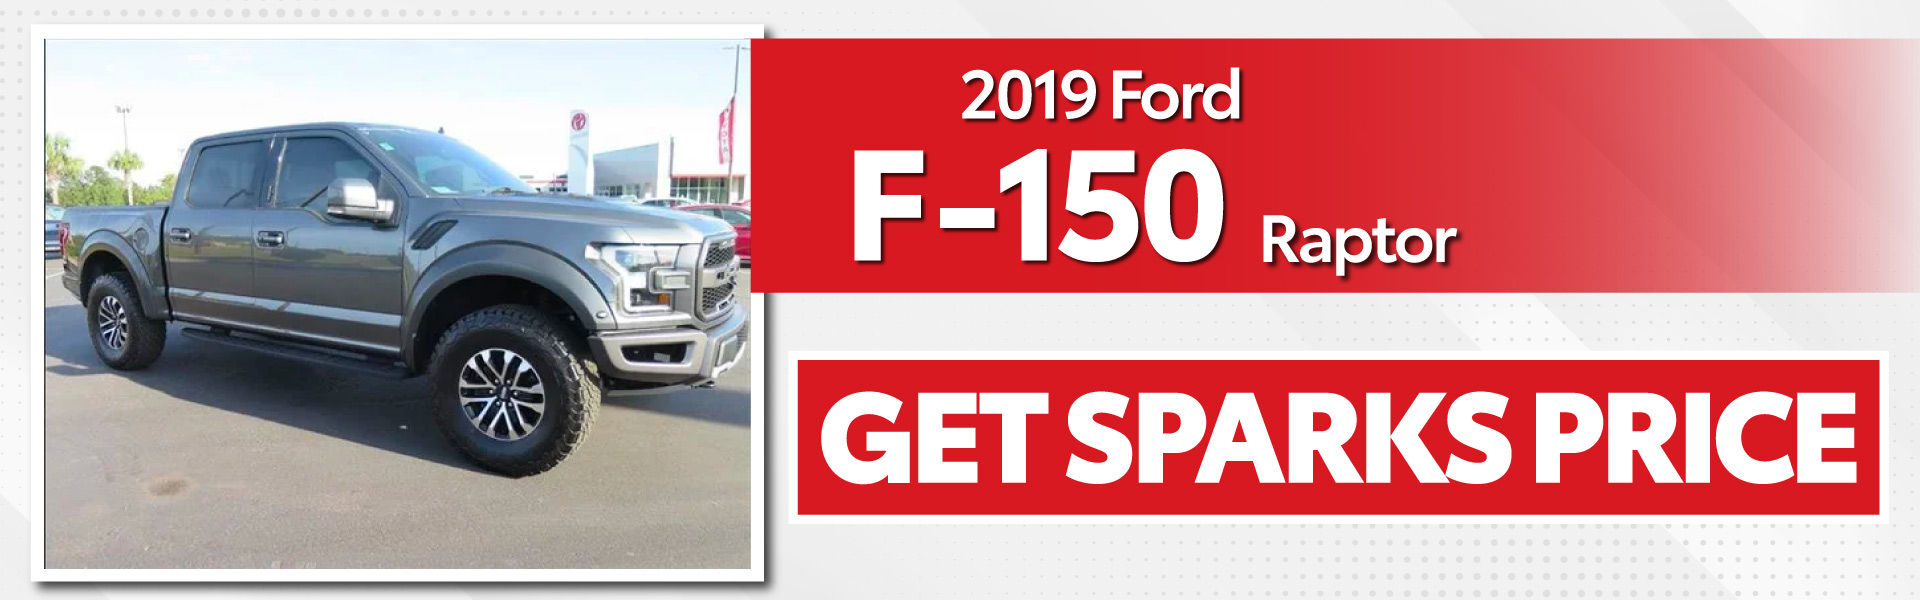 2019 Ford F-150 Raptor - Get Sparks Price